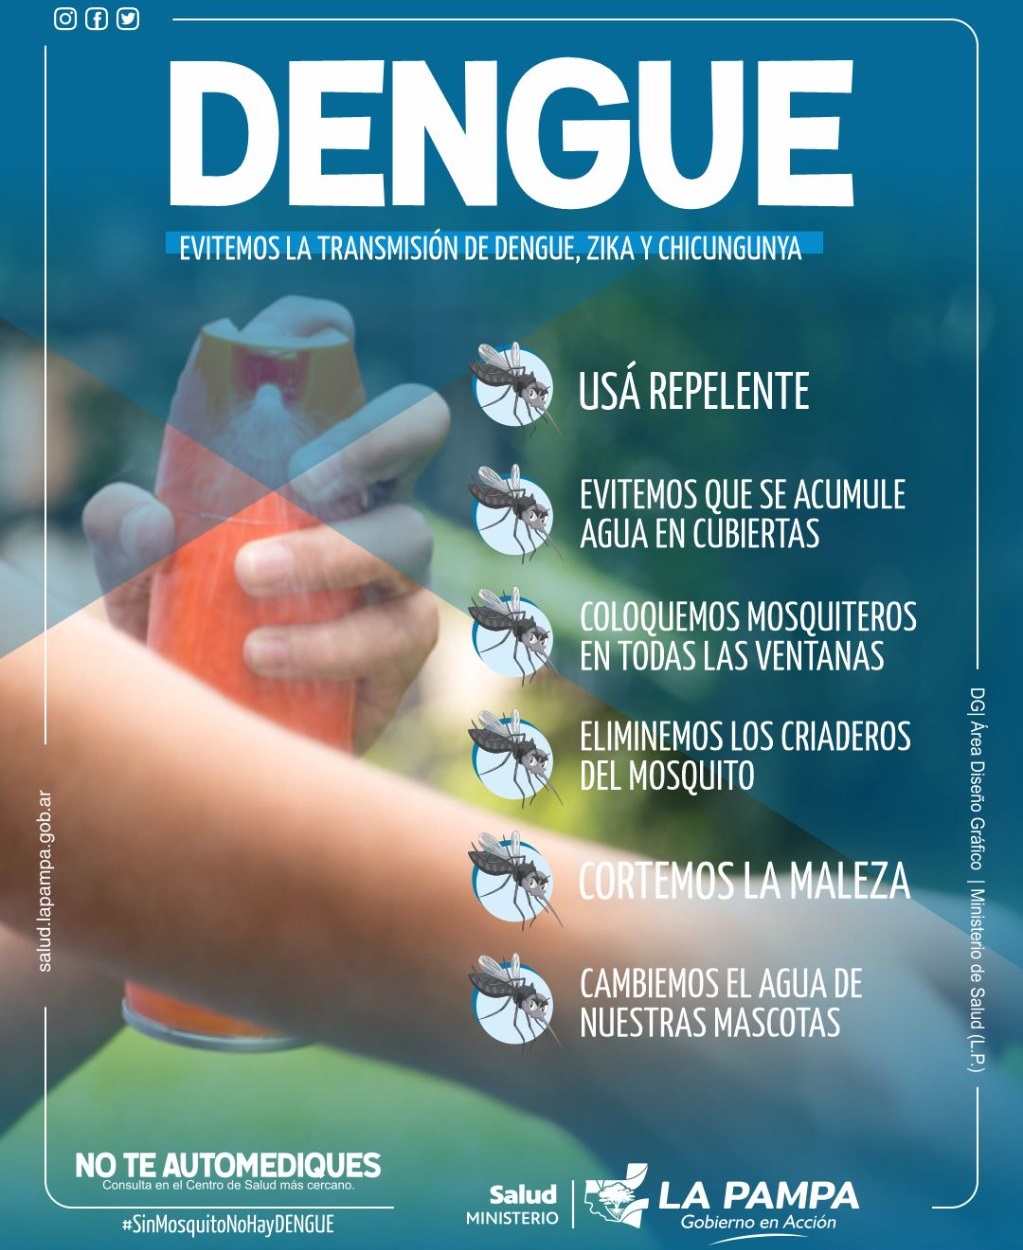 Síntomas a los que estar alertas y medidas de prevención contra el dengue